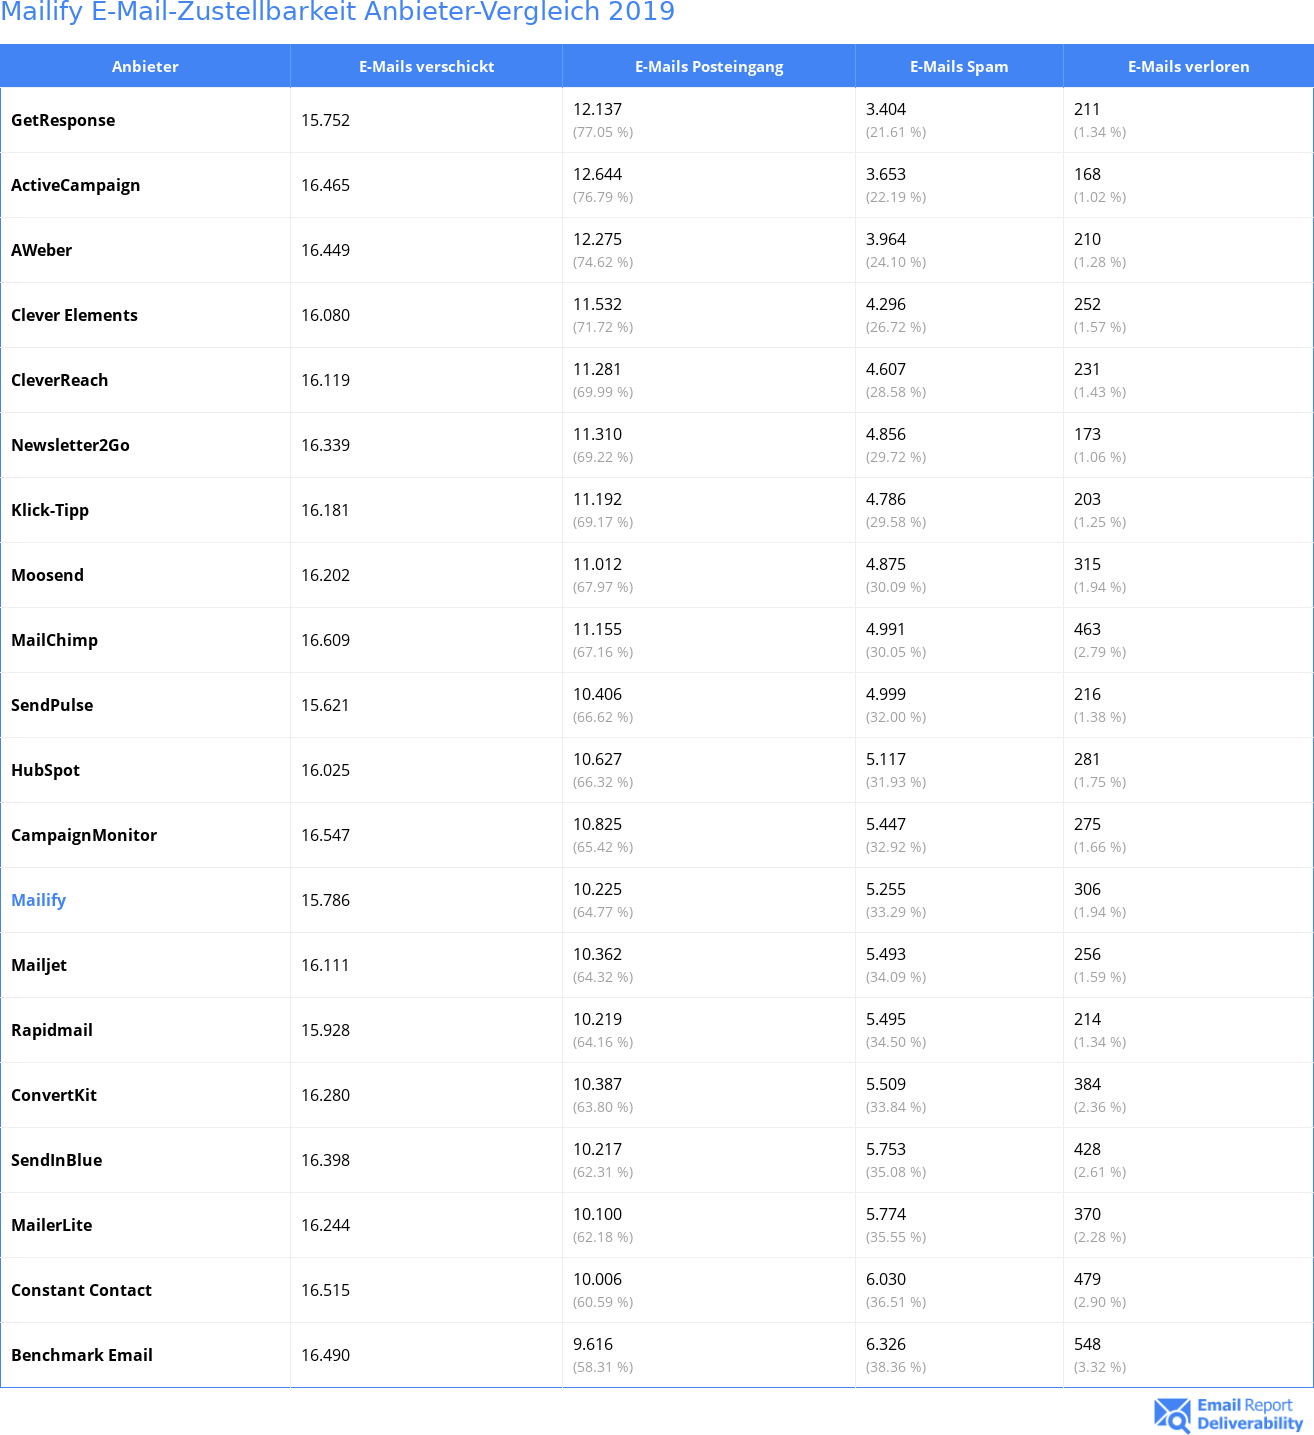 Mailify E-Mail-Zustellbarkeit Anbieter-Vergleich 2019